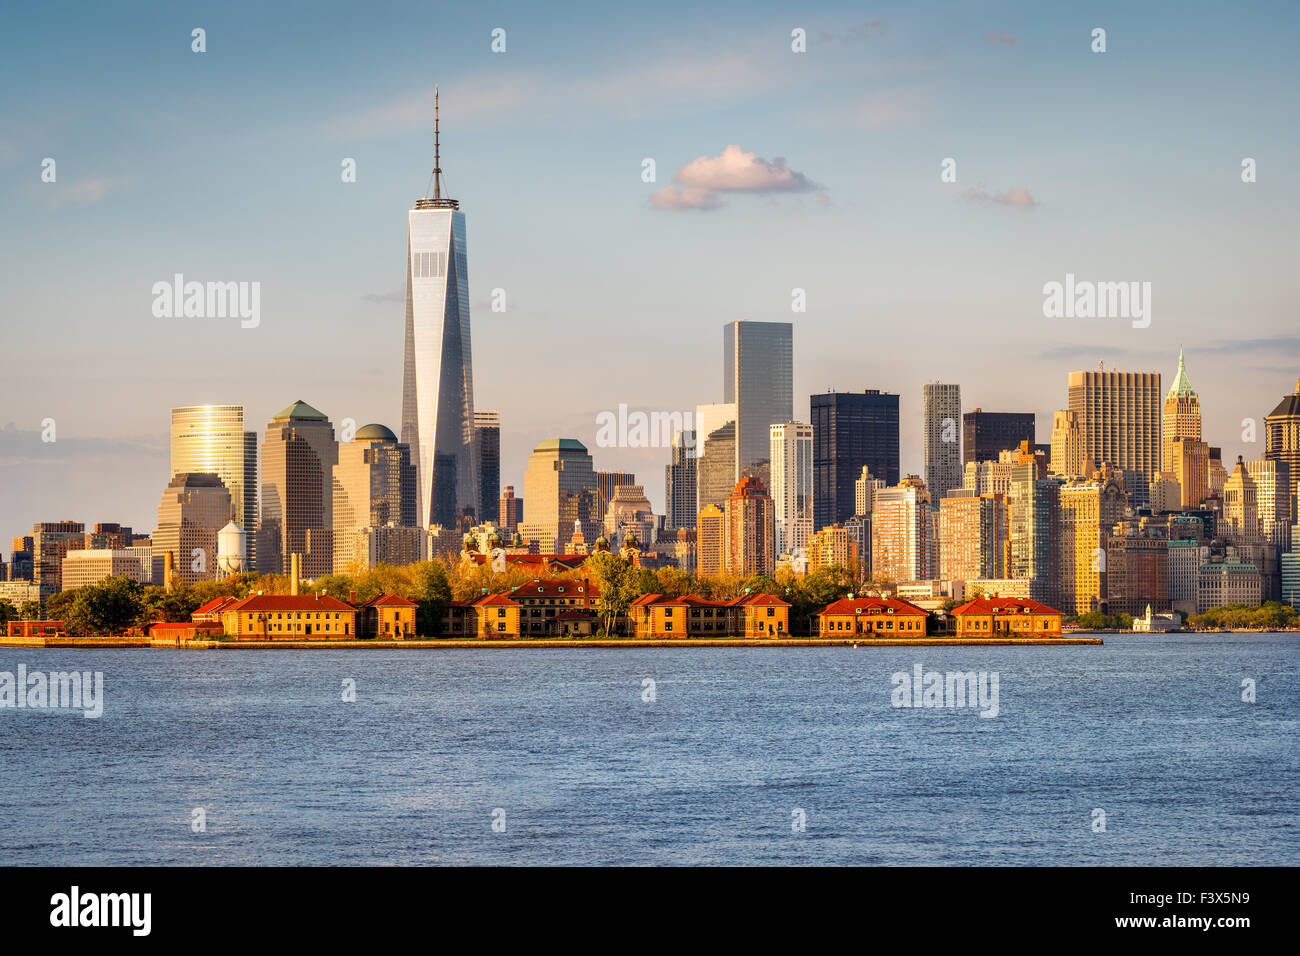 Vista del Puerto de Nueva York, del World Trade Center y el distrito financiero de Manhattan con sus rascacielos y la Isla Ellis. Ee.Uu. Foto de stock